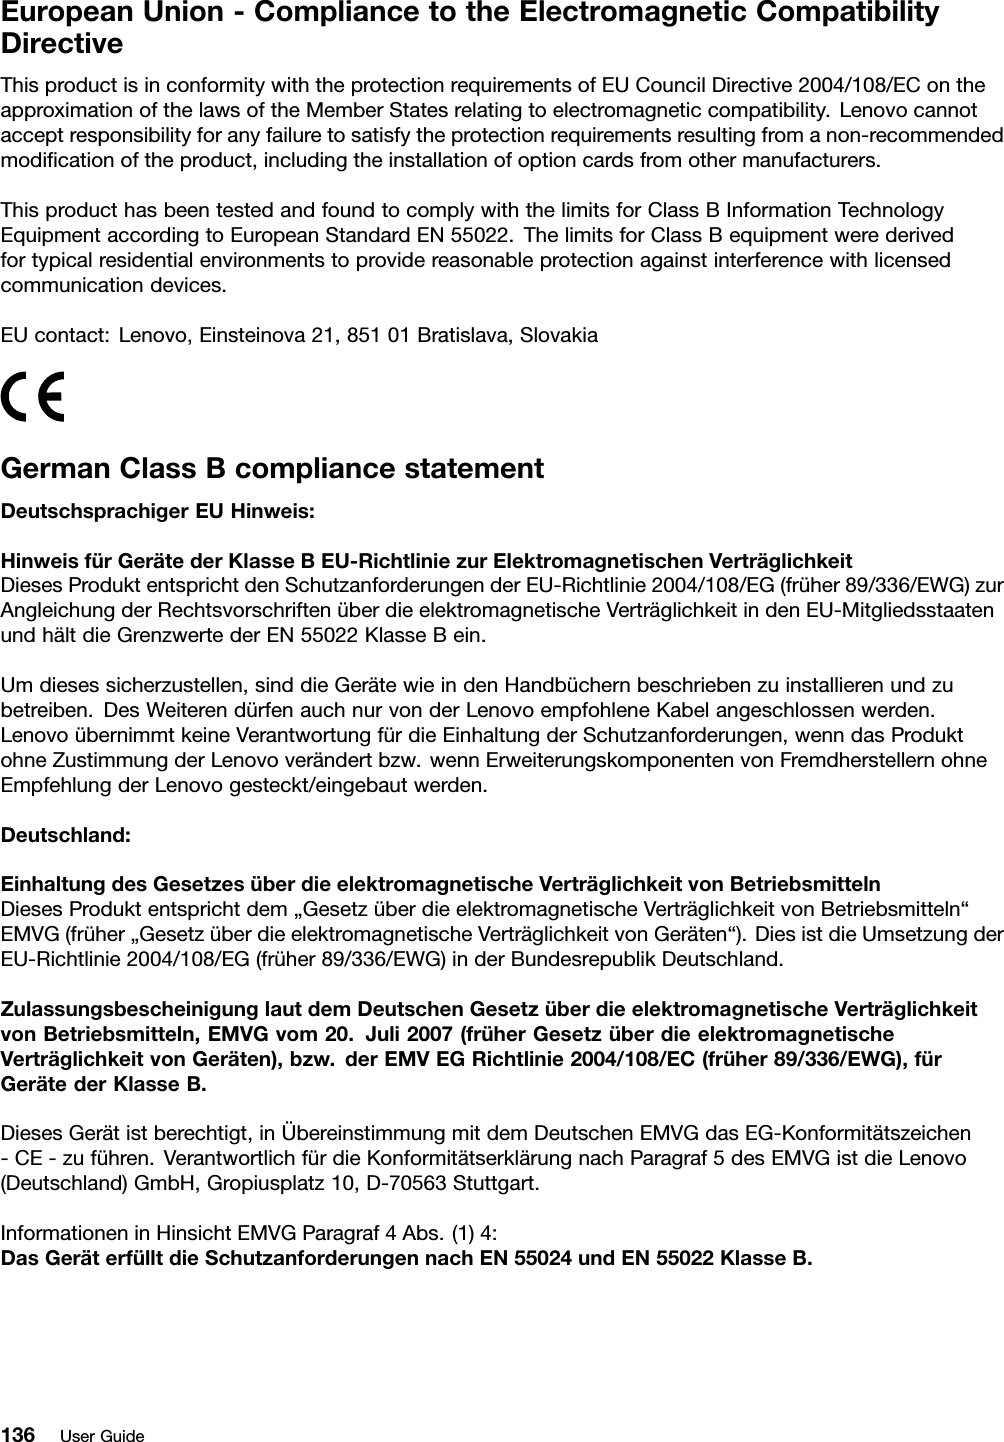 EuropeanUnion-CompliancetotheElectromagneticCompatibilityDirectiveThisproductisinconformitywiththeprotectionrequirementsofEUCouncilDirective2004/108/EContheapproximationofthelawsoftheMemberStatesrelatingtoelectromagneticcompatibility.Lenovocannotacceptresponsibilityforanyfailuretosatisfytheprotectionrequirementsresultingfromanon-recommendedmodiﬁcationoftheproduct,includingtheinstallationofoptioncardsfromothermanufacturers.ThisproducthasbeentestedandfoundtocomplywiththelimitsforClassBInformationTechnologyEquipmentaccordingtoEuropeanStandardEN55022.ThelimitsforClassBequipmentwerederivedfortypicalresidentialenvironmentstoprovidereasonableprotectionagainstinterferencewithlicensedcommunicationdevices.EUcontact:Lenovo,Einsteinova21,85101Bratislava,SlovakiaGermanClassBcompliancestatementDeutschsprachigerEUHinweis:HinweisfürGerätederKlasseBEU-RichtliniezurElektromagnetischenVerträglichkeitDiesesProduktentsprichtdenSchutzanforderungenderEU-Richtlinie2004/108/EG(früher89/336/EWG)zurAngleichungderRechtsvorschriftenüberdieelektromagnetischeVerträglichkeitindenEU-MitgliedsstaatenundhältdieGrenzwertederEN55022KlasseBein.Umdiesessicherzustellen,sinddieGerätewieindenHandbüchernbeschriebenzuinstallierenundzubetreiben.DesWeiterendürfenauchnurvonderLenovoempfohleneKabelangeschlossenwerden.LenovoübernimmtkeineVerantwortungfürdieEinhaltungderSchutzanforderungen,wenndasProduktohneZustimmungderLenovoverändertbzw.wennErweiterungskomponentenvonFremdherstellernohneEmpfehlungderLenovogesteckt/eingebautwerden.Deutschland:EinhaltungdesGesetzesüberdieelektromagnetischeVerträglichkeitvonBetriebsmittelnDiesesProduktentsprichtdem„GesetzüberdieelektromagnetischeVerträglichkeitvonBetriebsmitteln“EMVG(früher„GesetzüberdieelektromagnetischeVerträglichkeitvonGeräten“).DiesistdieUmsetzungderEU-Richtlinie2004/108/EG(früher89/336/EWG)inderBundesrepublikDeutschland.ZulassungsbescheinigunglautdemDeutschenGesetzüberdieelektromagnetischeVerträglichkeitvonBetriebsmitteln,EMVGvom20.Juli2007(früherGesetzüberdieelektromagnetischeVerträglichkeitvonGeräten),bzw.derEMVEGRichtlinie2004/108/EC(früher89/336/EWG),fürGerätederKlasseB.DiesesGerätistberechtigt,inÜbereinstimmungmitdemDeutschenEMVGdasEG-Konformitätszeichen-CE-zuführen.VerantwortlichfürdieKonformitätserklärungnachParagraf5desEMVGistdieLenovo(Deutschland)GmbH,Gropiusplatz10,D-70563Stuttgart.InformationeninHinsichtEMVGParagraf4Abs.(1)4:DasGeräterfülltdieSchutzanforderungennachEN55024undEN55022KlasseB.136UserGuide